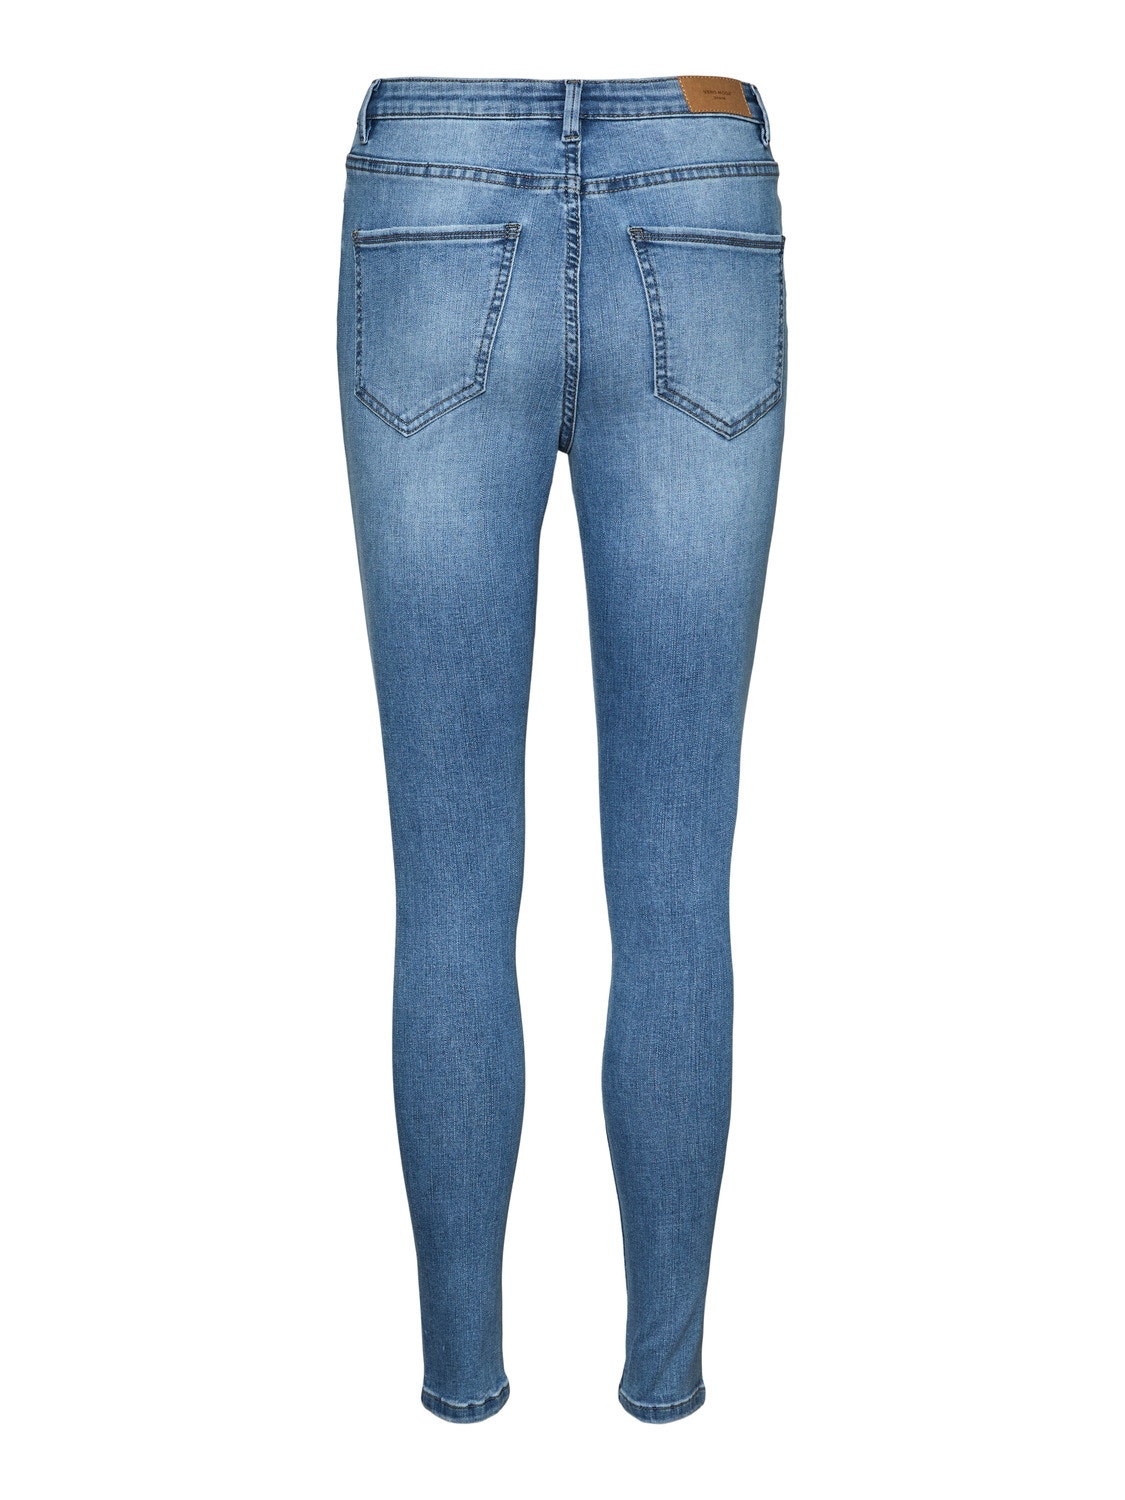 Vero Moda VMSOPHIA High rise Skinny Fit Jeans -Light Blue Denim - 10260927